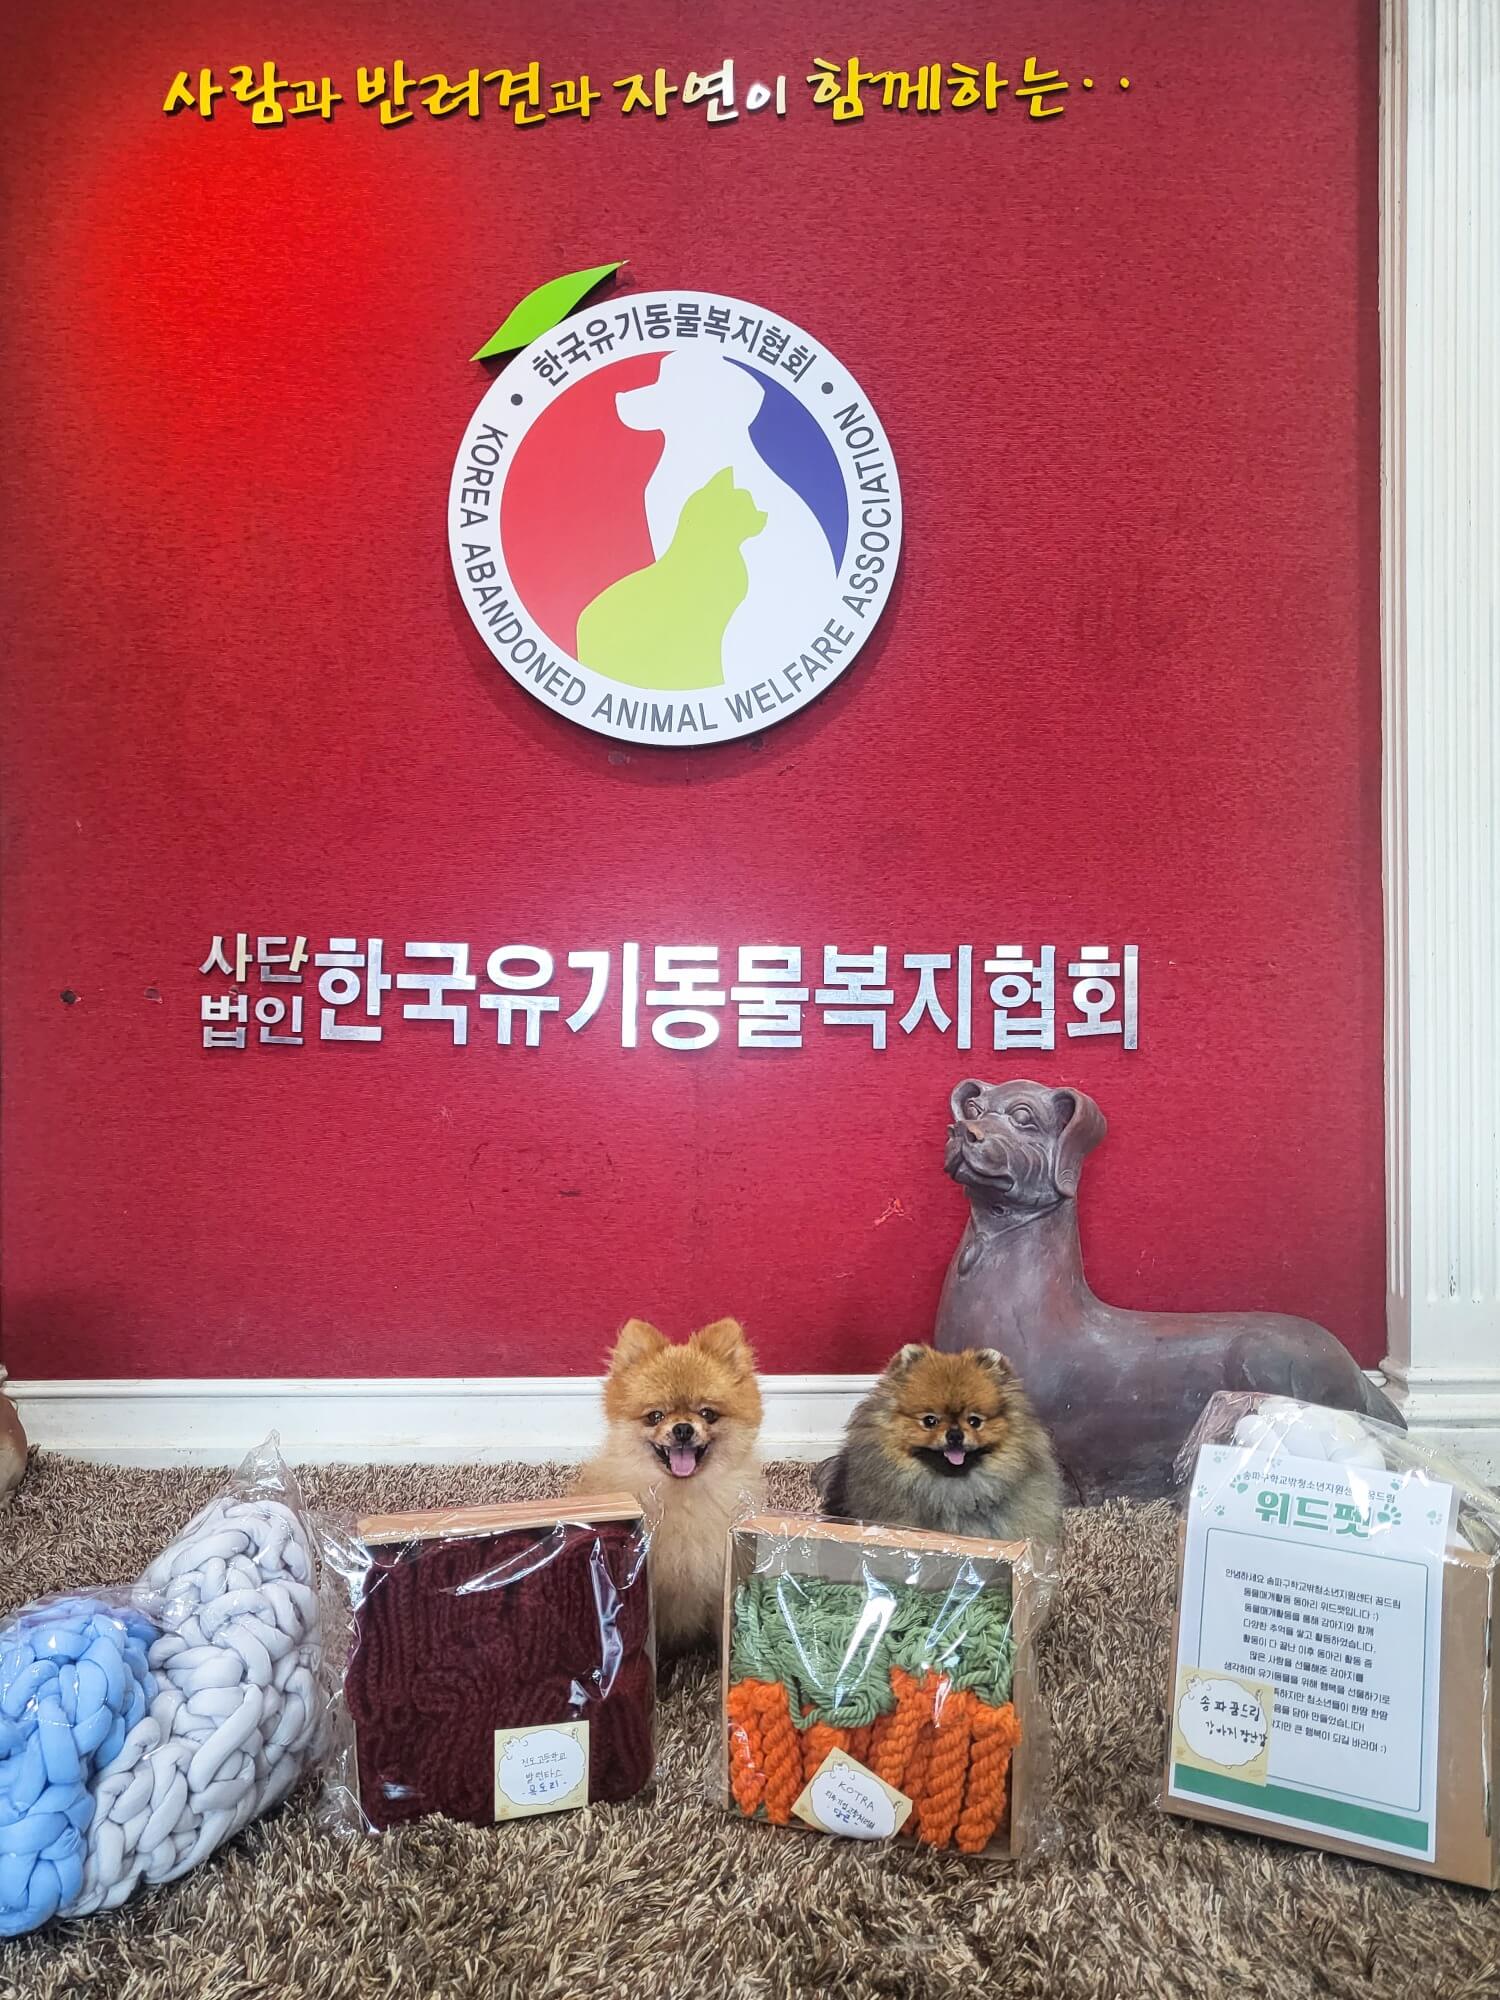 한국유기동물복지협회에 전달된 유기견을 위한 기부 용품들을 반기는 강아지